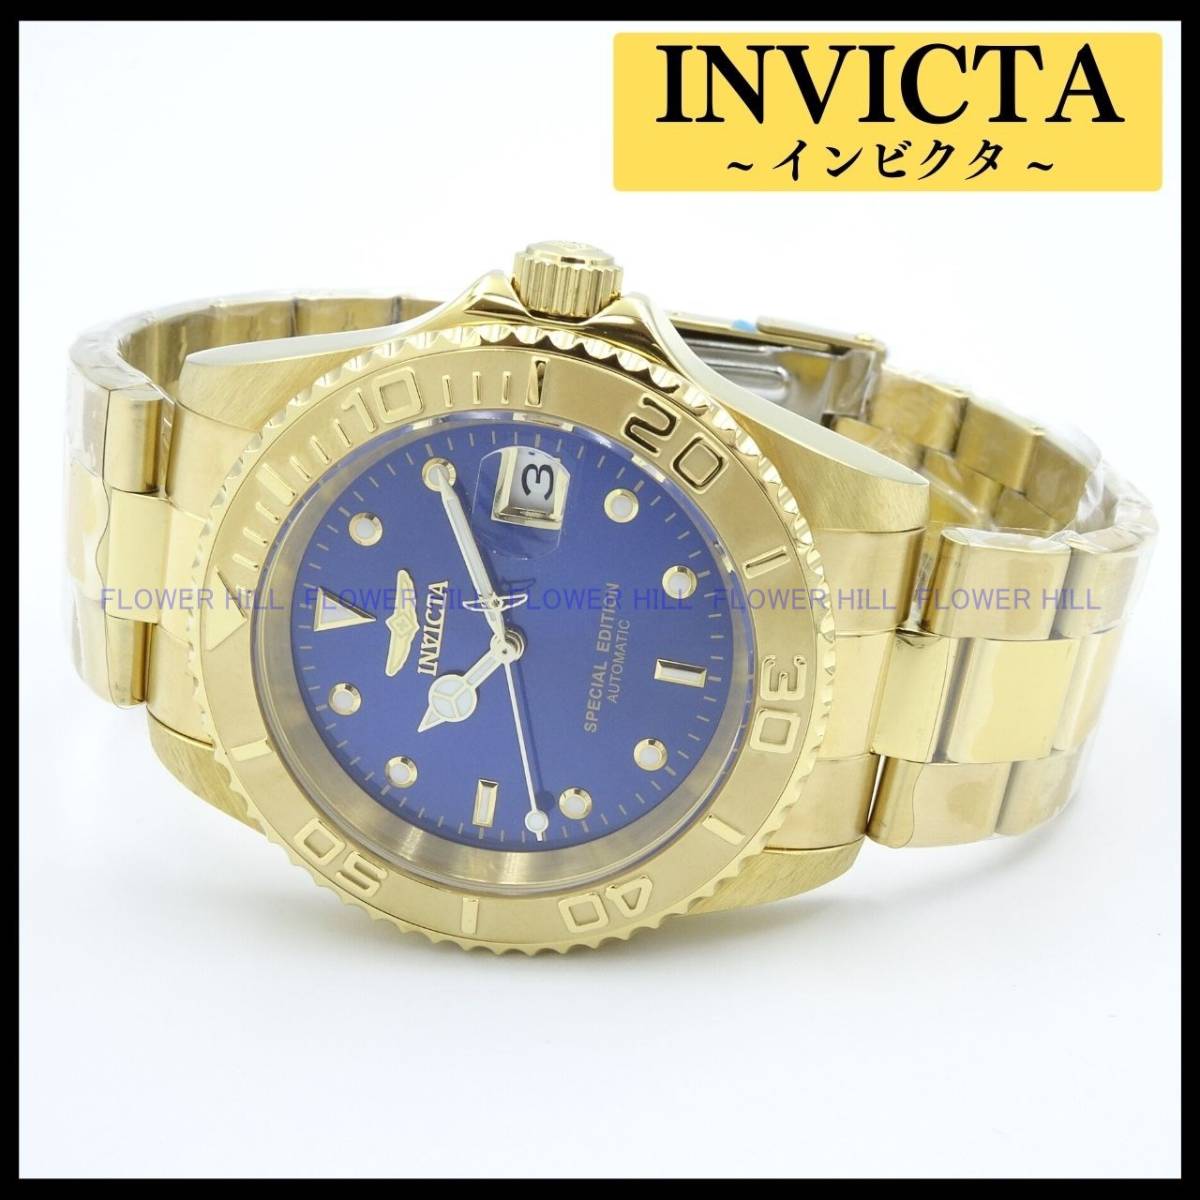 【新品・送料無料】インビクタ INVICTA 腕時計 メンズ 自動巻き カレンダー ブルー・ゴールド PRO DIVER 30603 メタルバンド